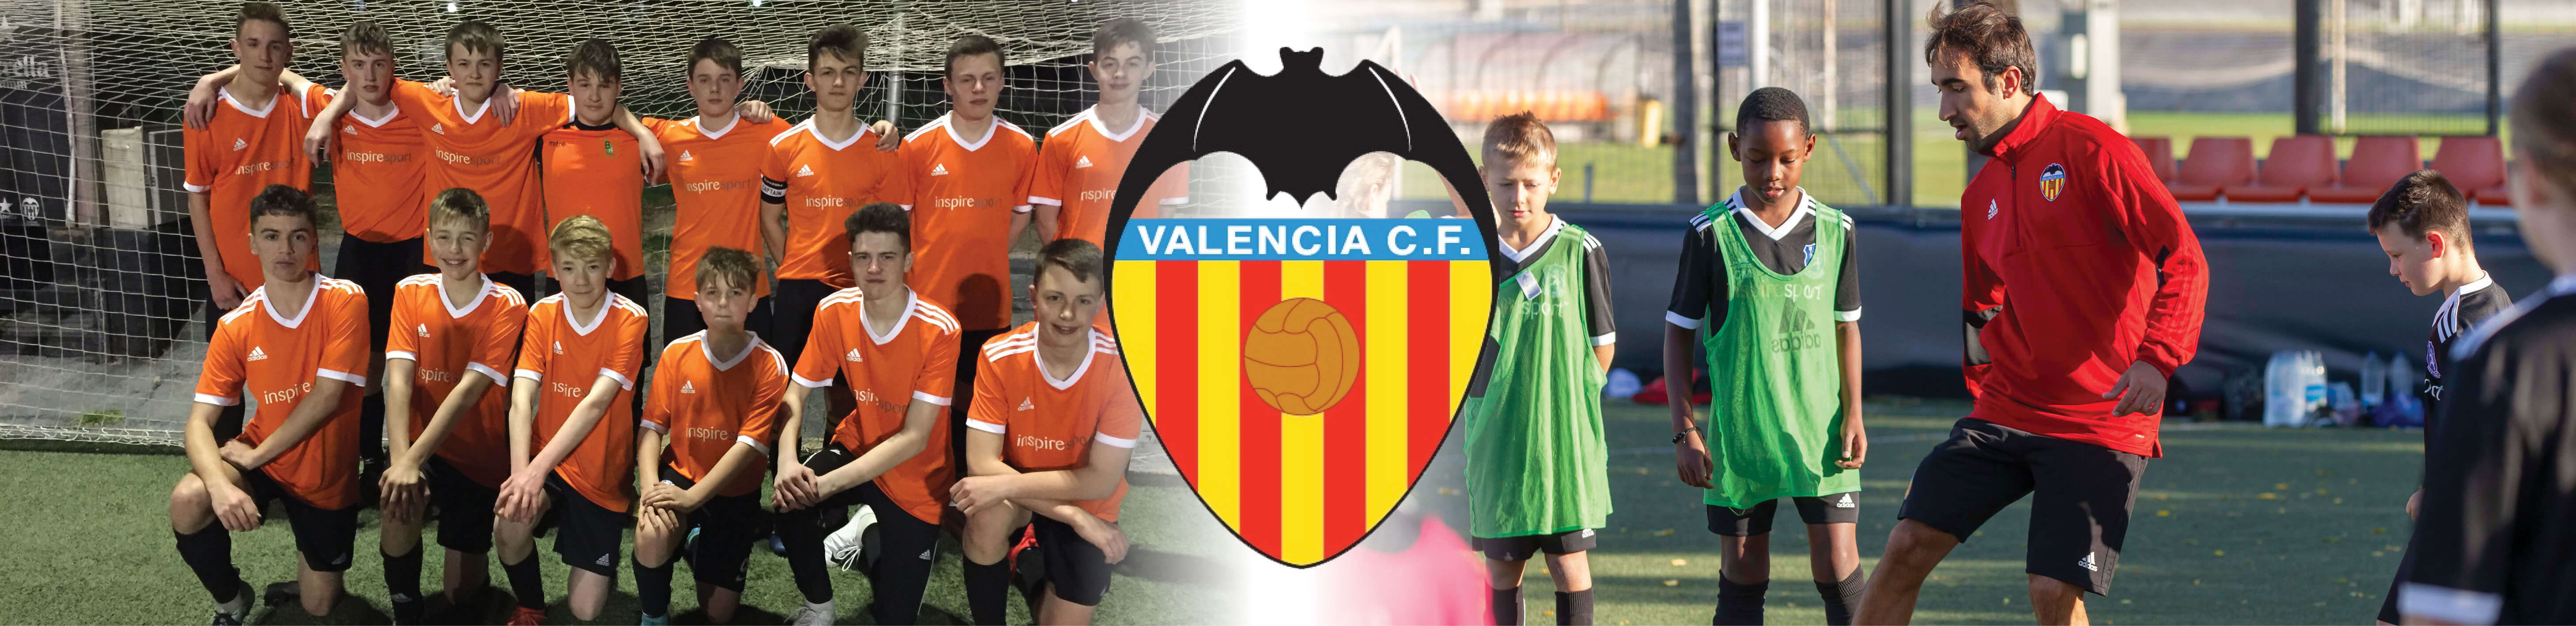 Valencia-Banner